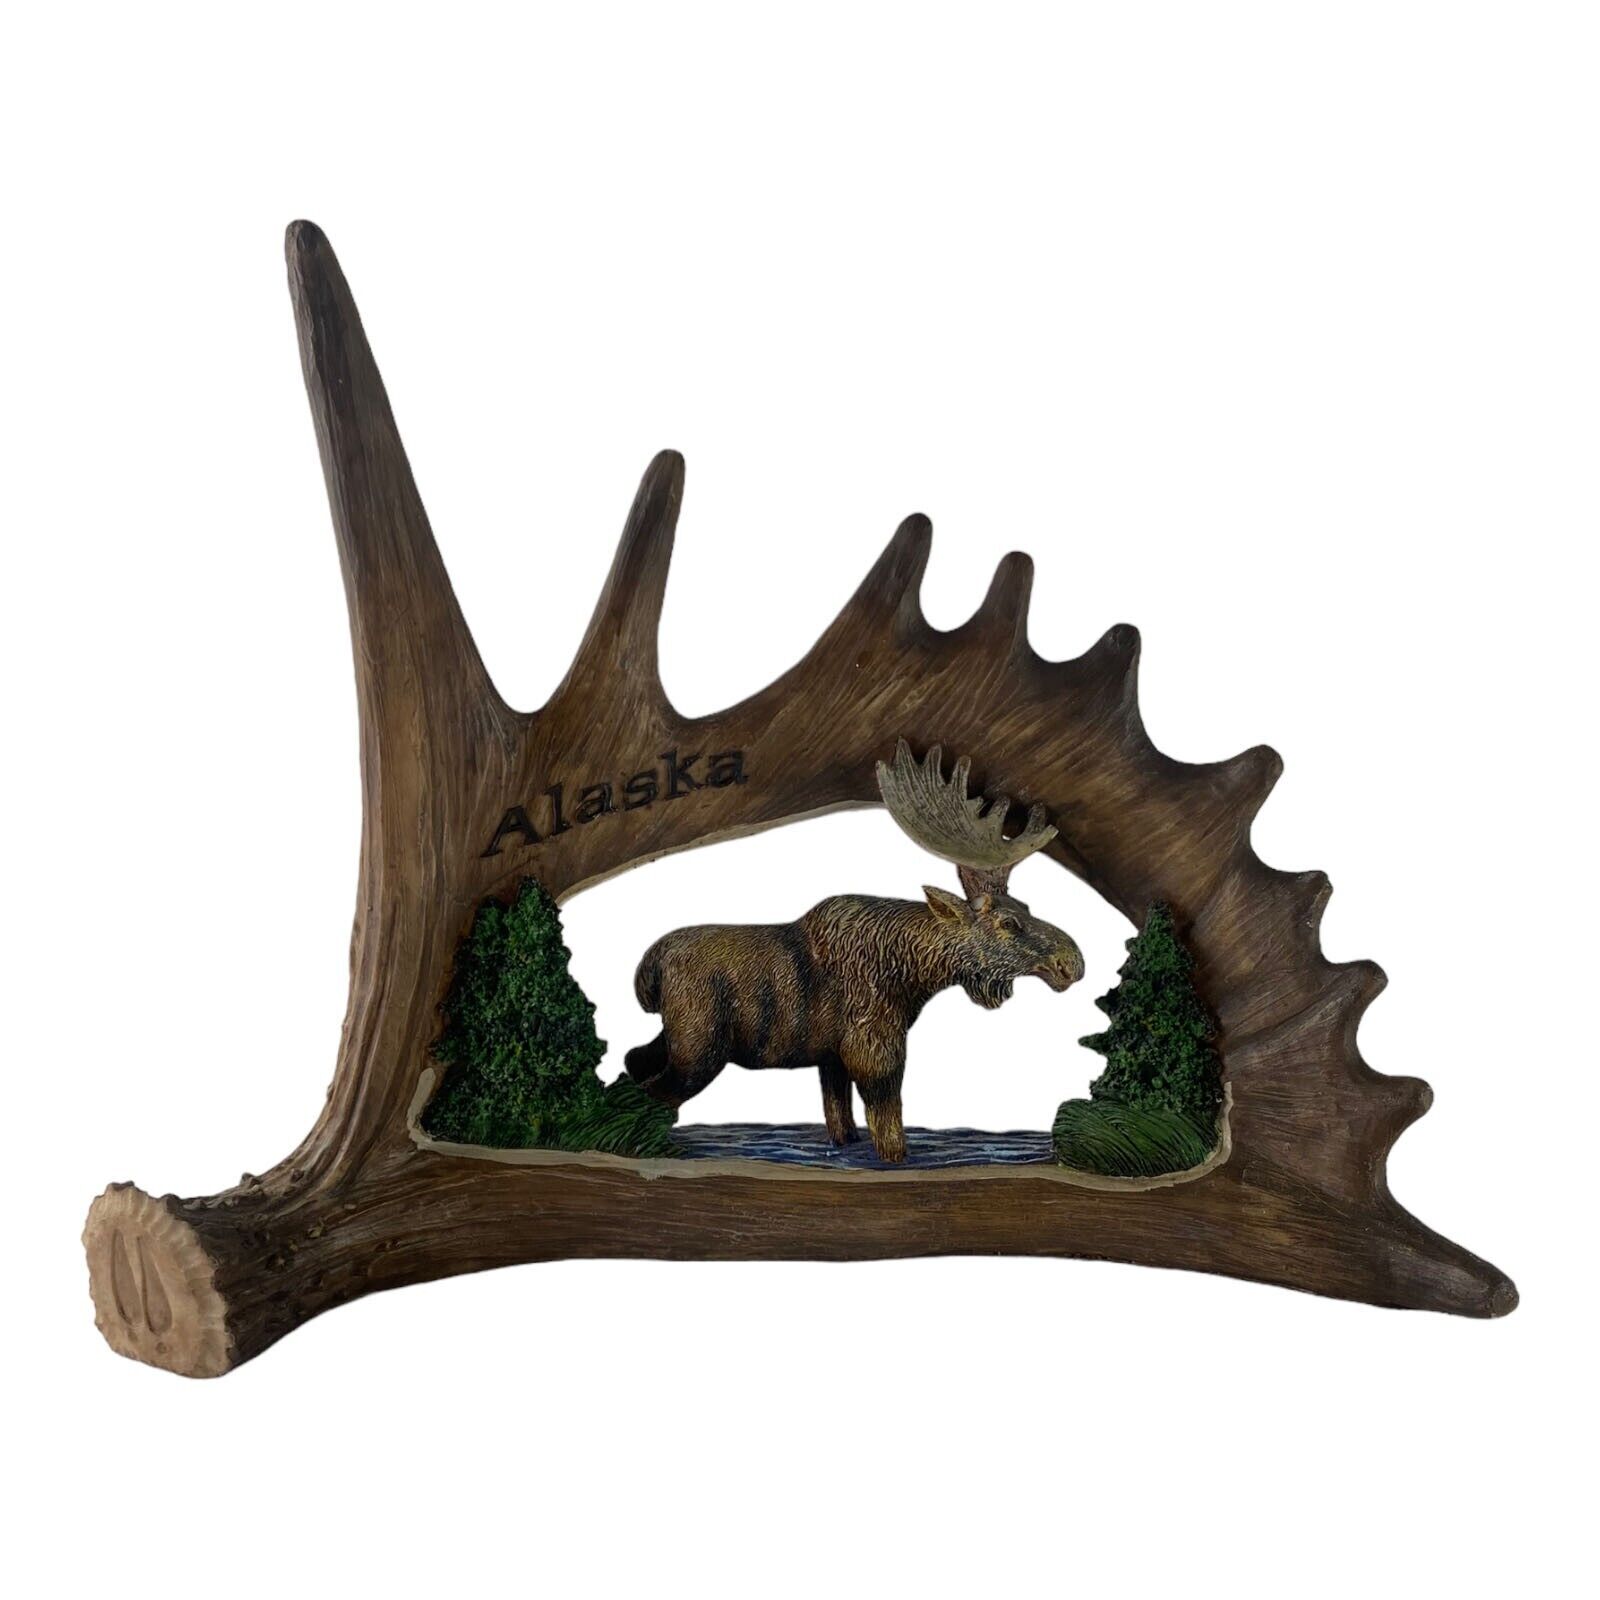 Ace Alaska Real Antler Folk Art Frame Carved Moose Trees Wood Wall Design